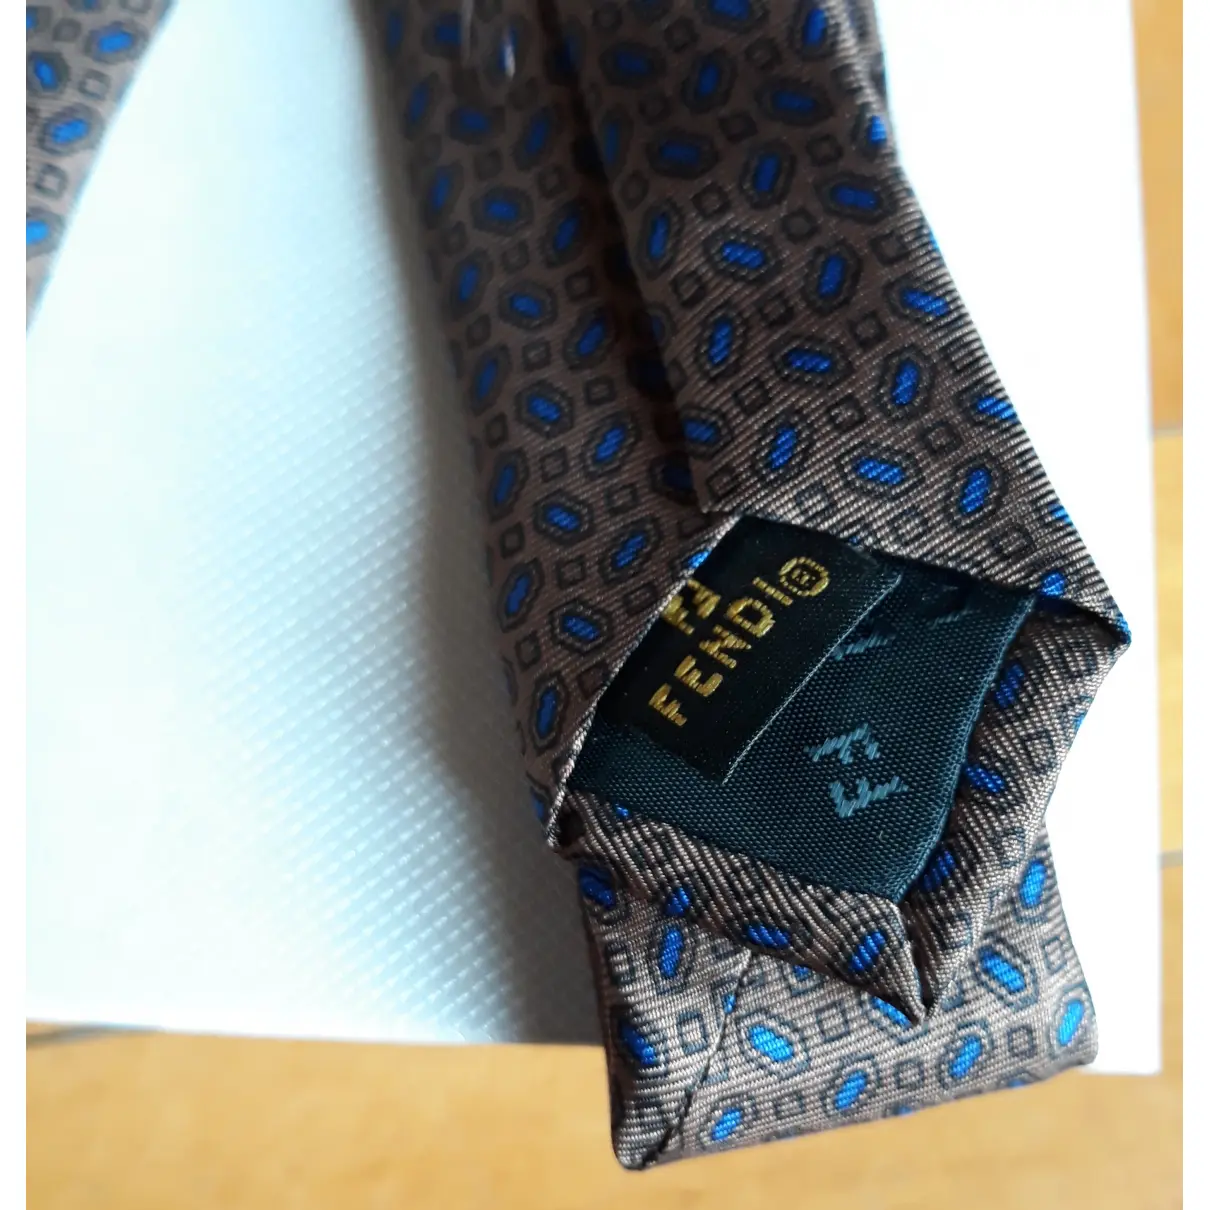 Buy Fendi Silk tie online - Vintage